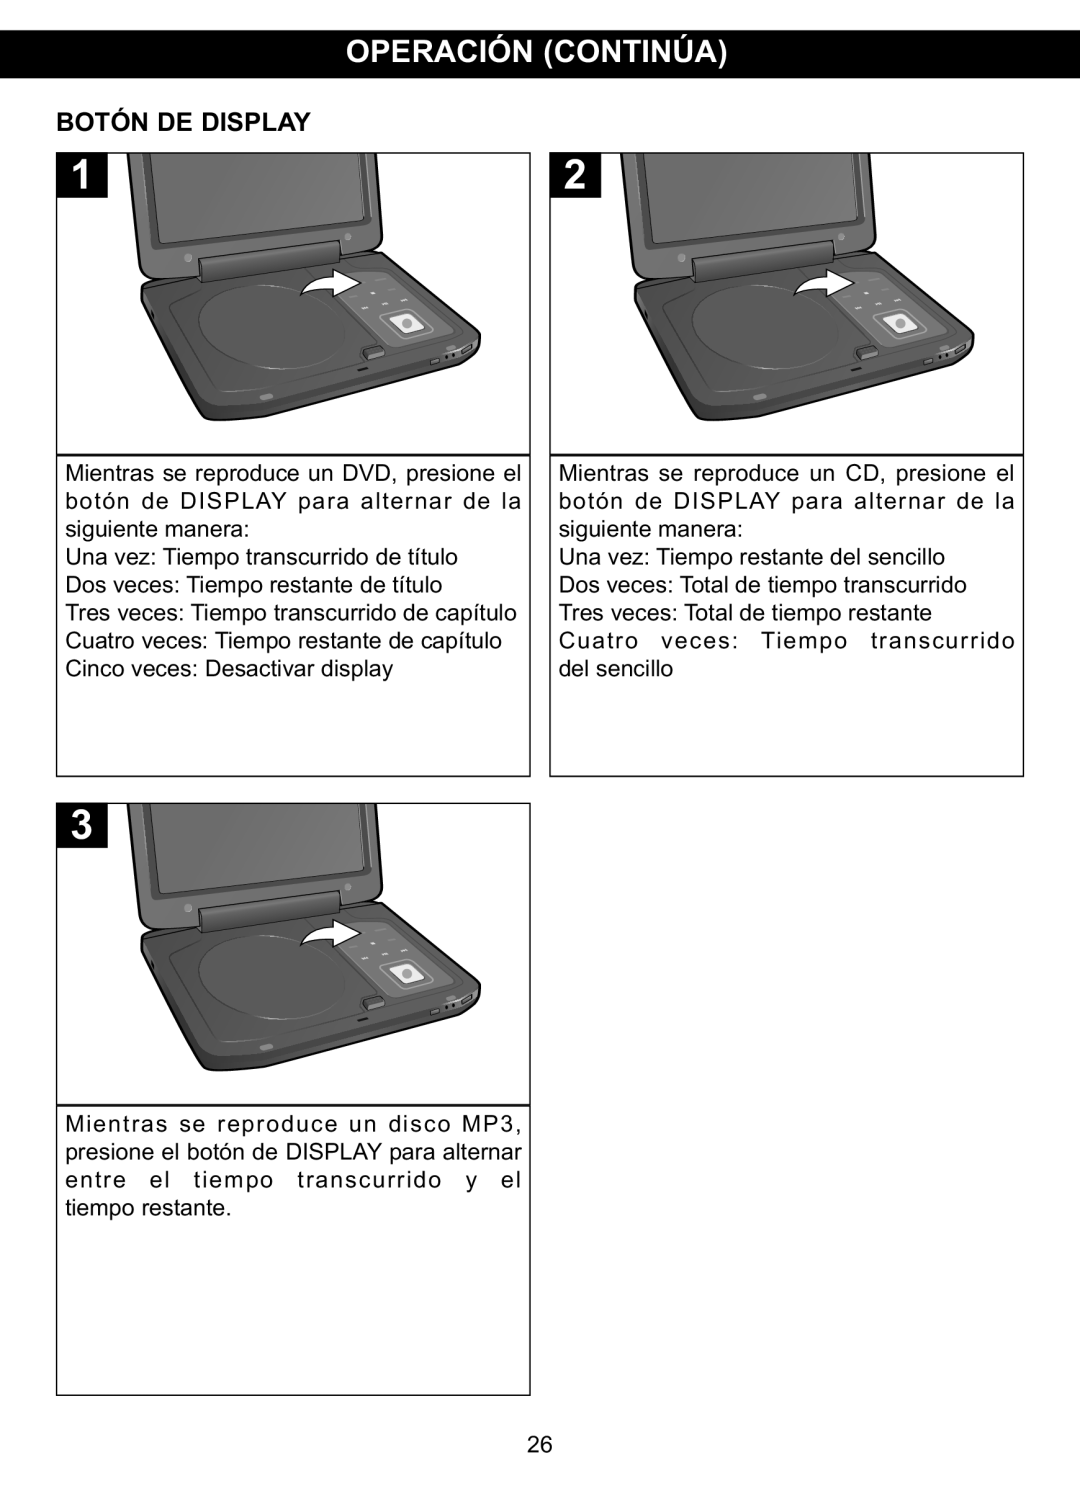 Memorex MVDP1088 manual Operación Continúa, Botón De Display 